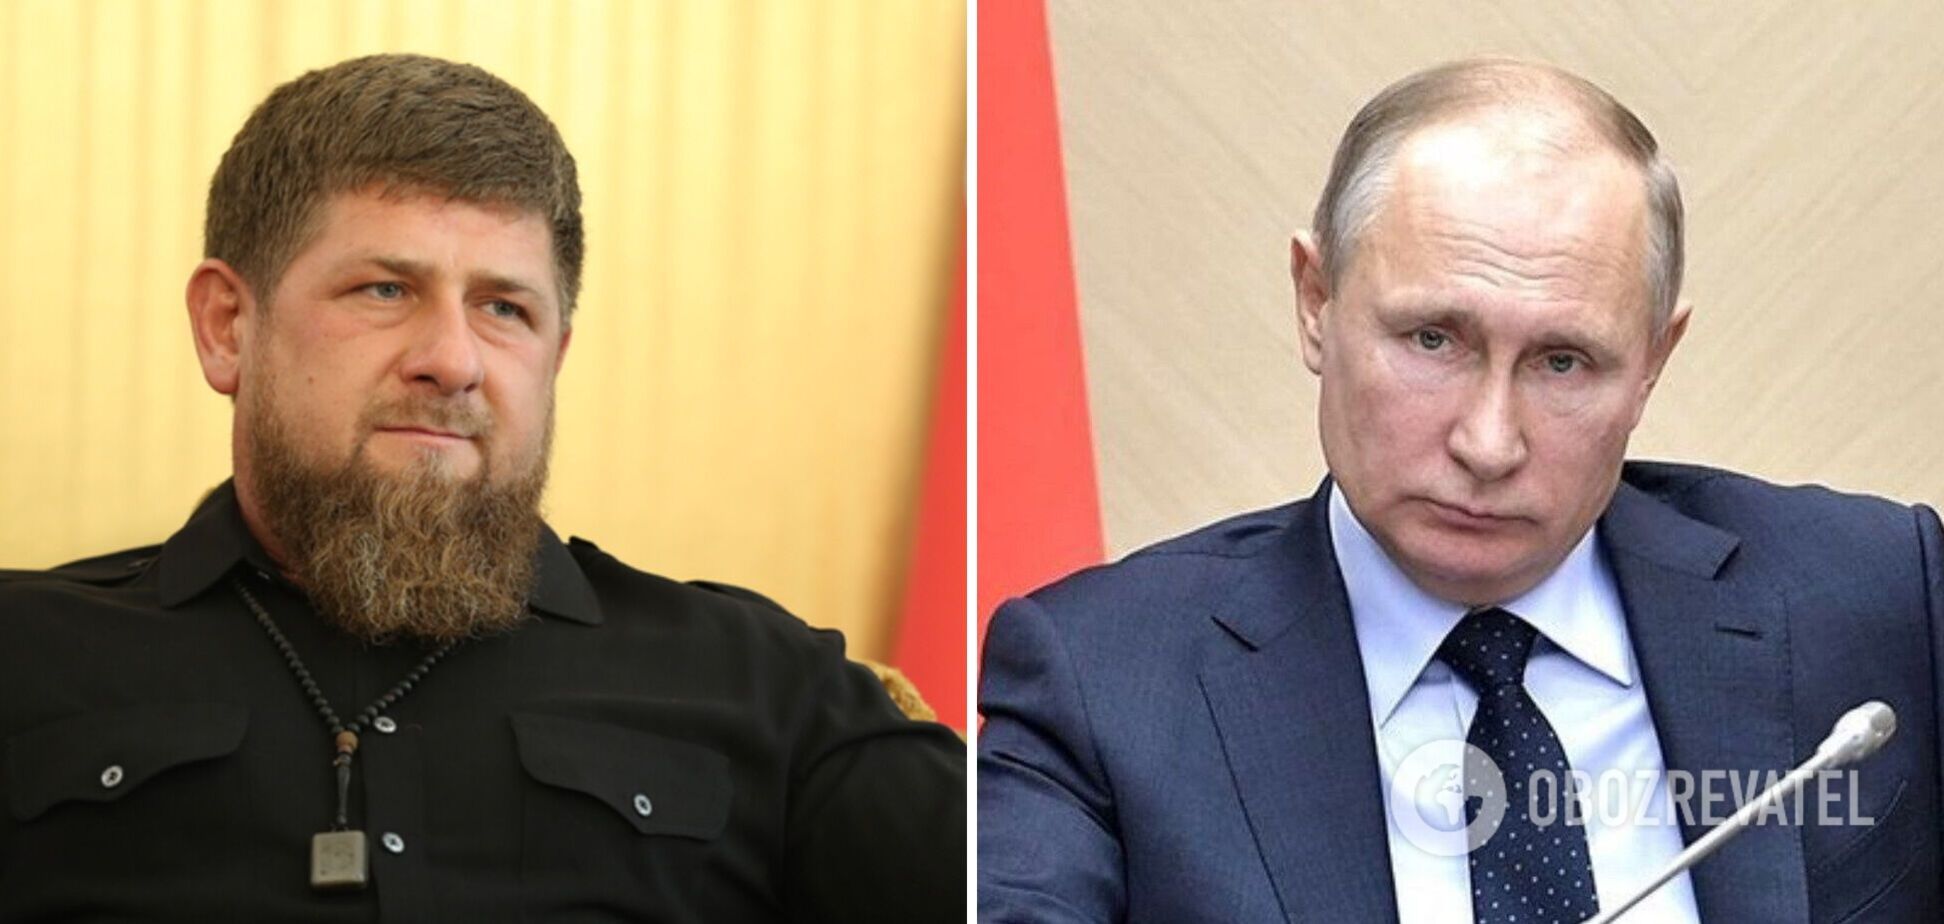 У Путина появился конкурент: Кадыров заявил, что имеет право баллотироваться на выборах президента РФ. Видео